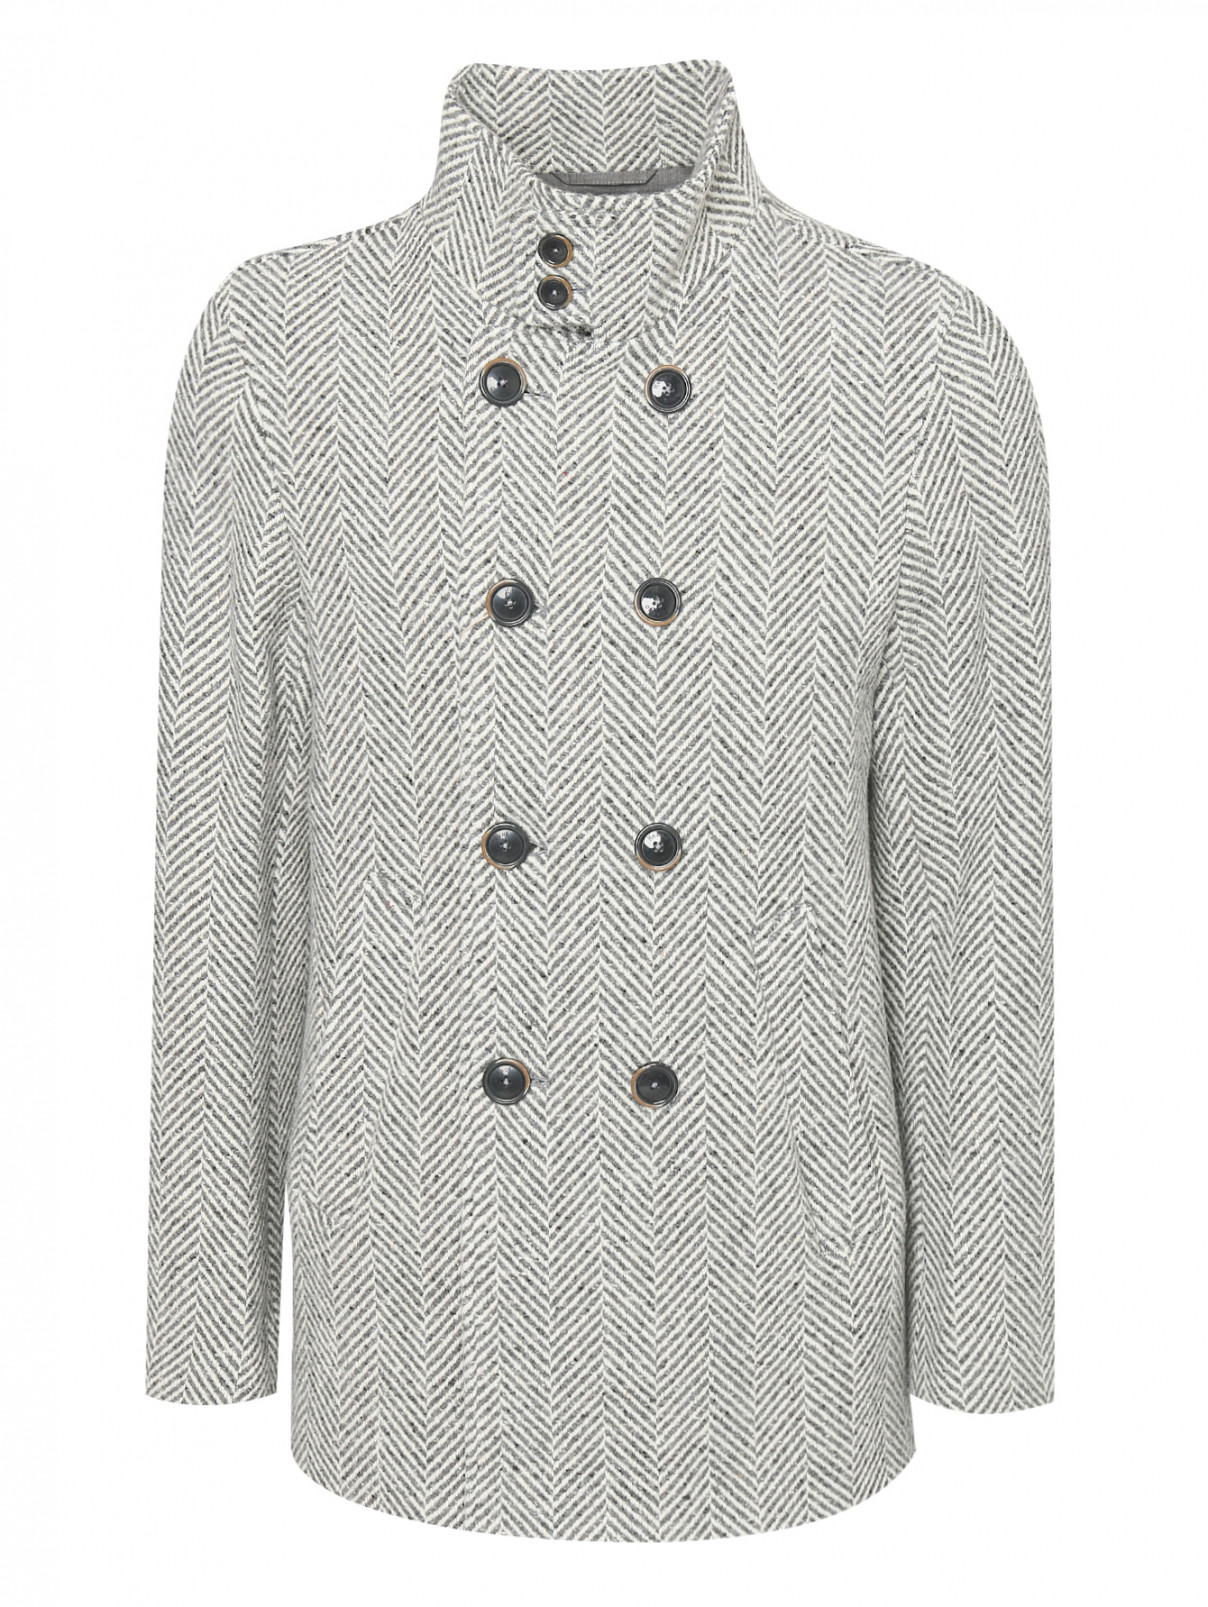 Пальто из шерсти с узором Herno  –  Общий вид  – Цвет:  Узор